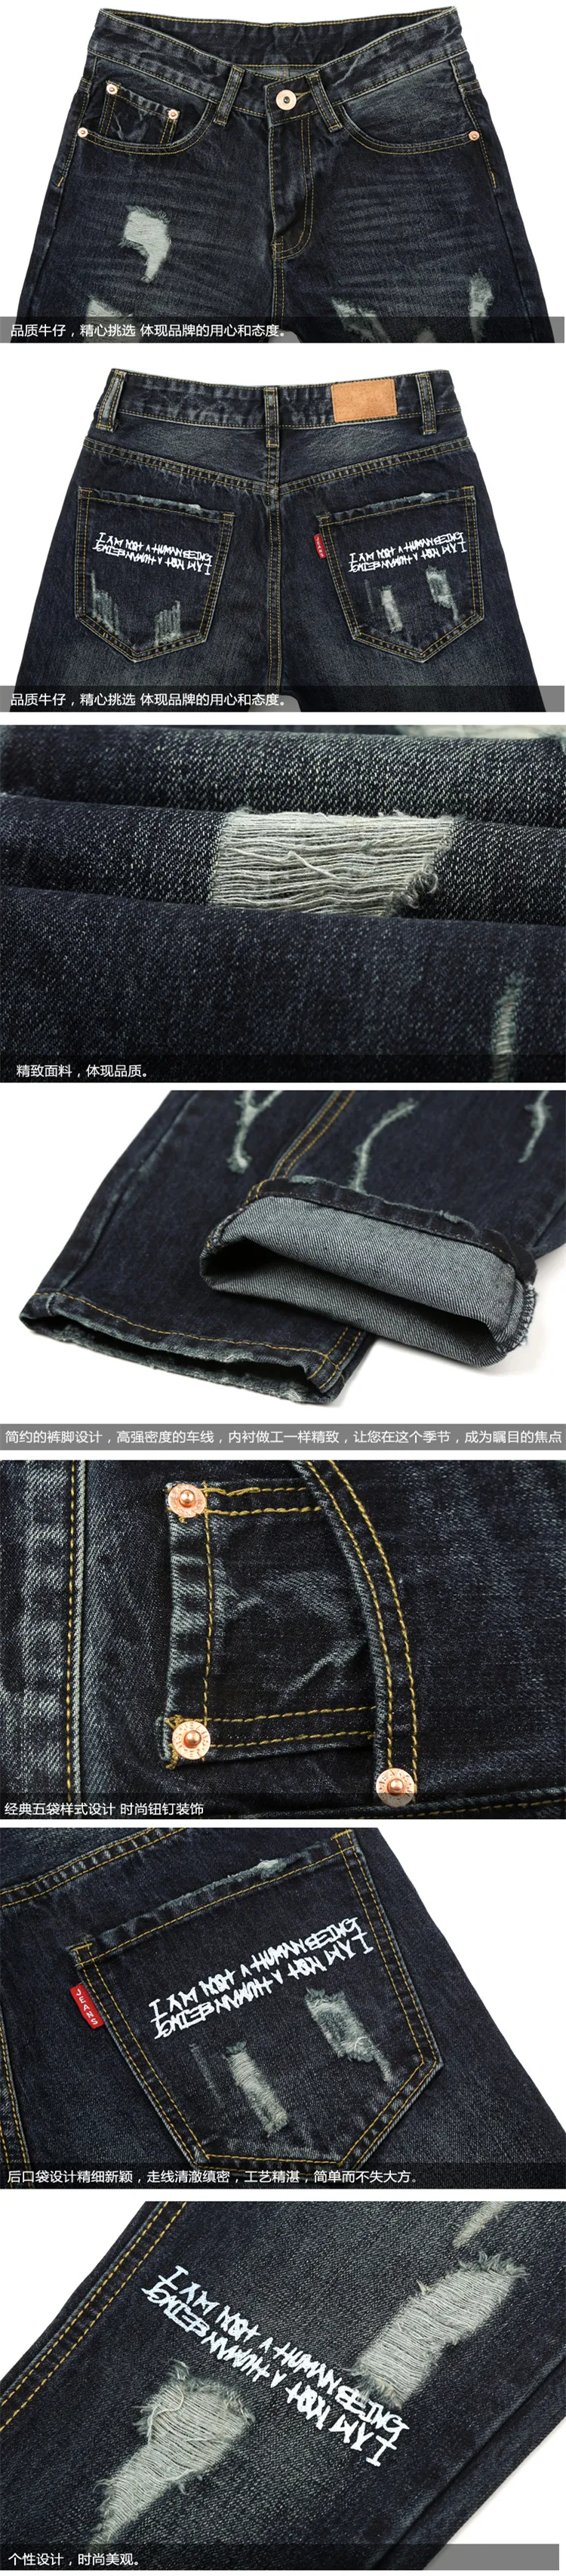 Высокое качество 2017 бренд для мужчин's джинсы для женщин рваные хлопок синий Slim Fit прямые с принтом букв мужчин Байкер Джинс